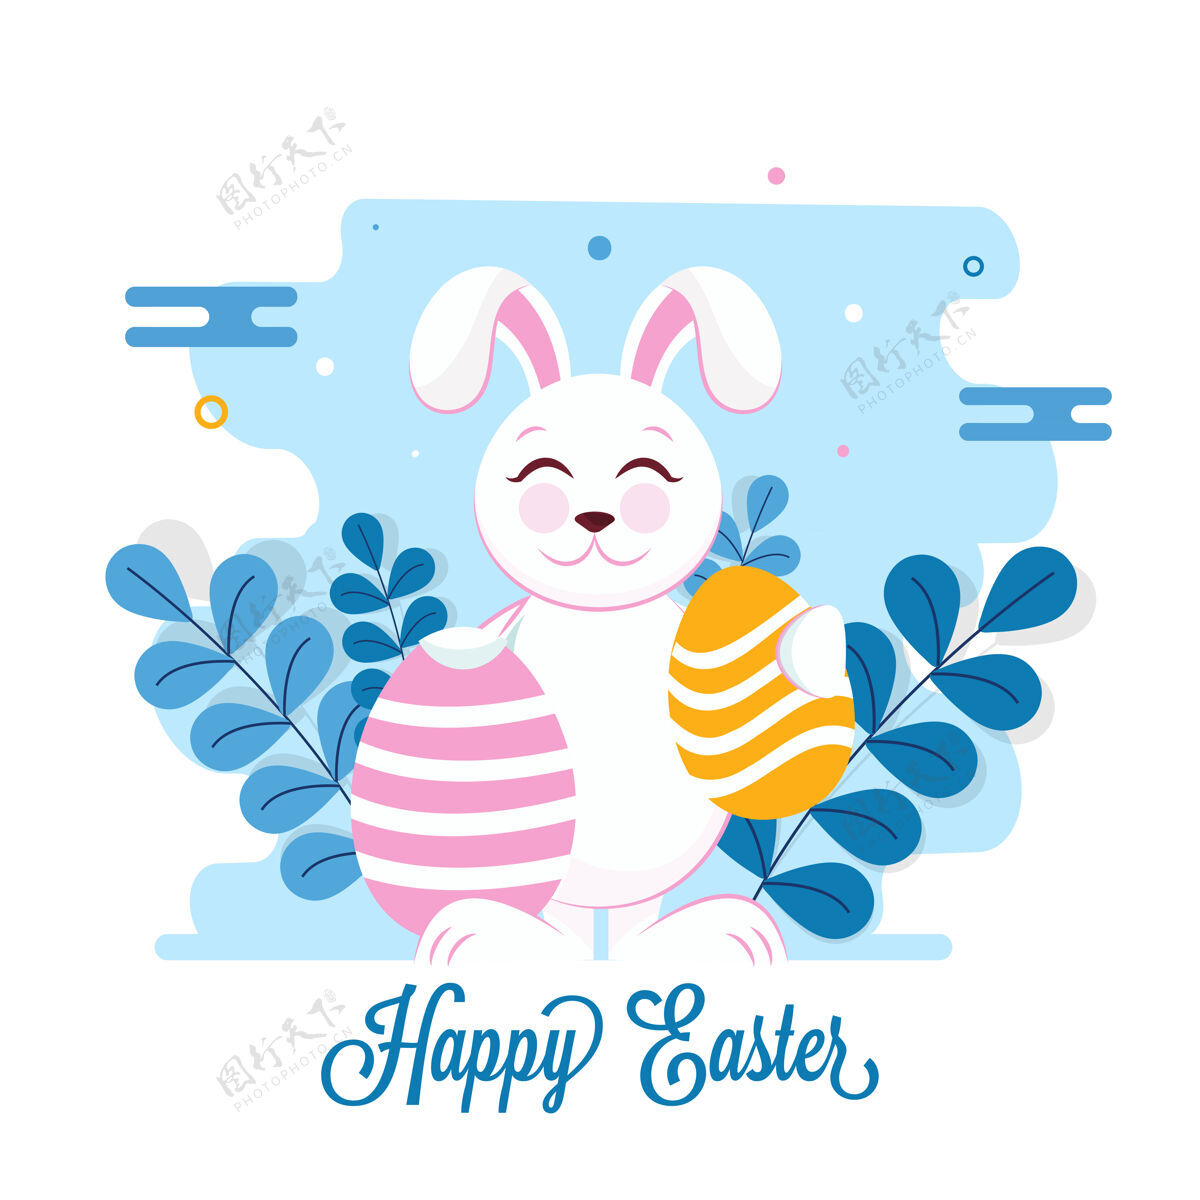 动物复活节快乐字体 卡通兔子拿着彩蛋和树叶 背景是蓝白相间的传统快乐事件